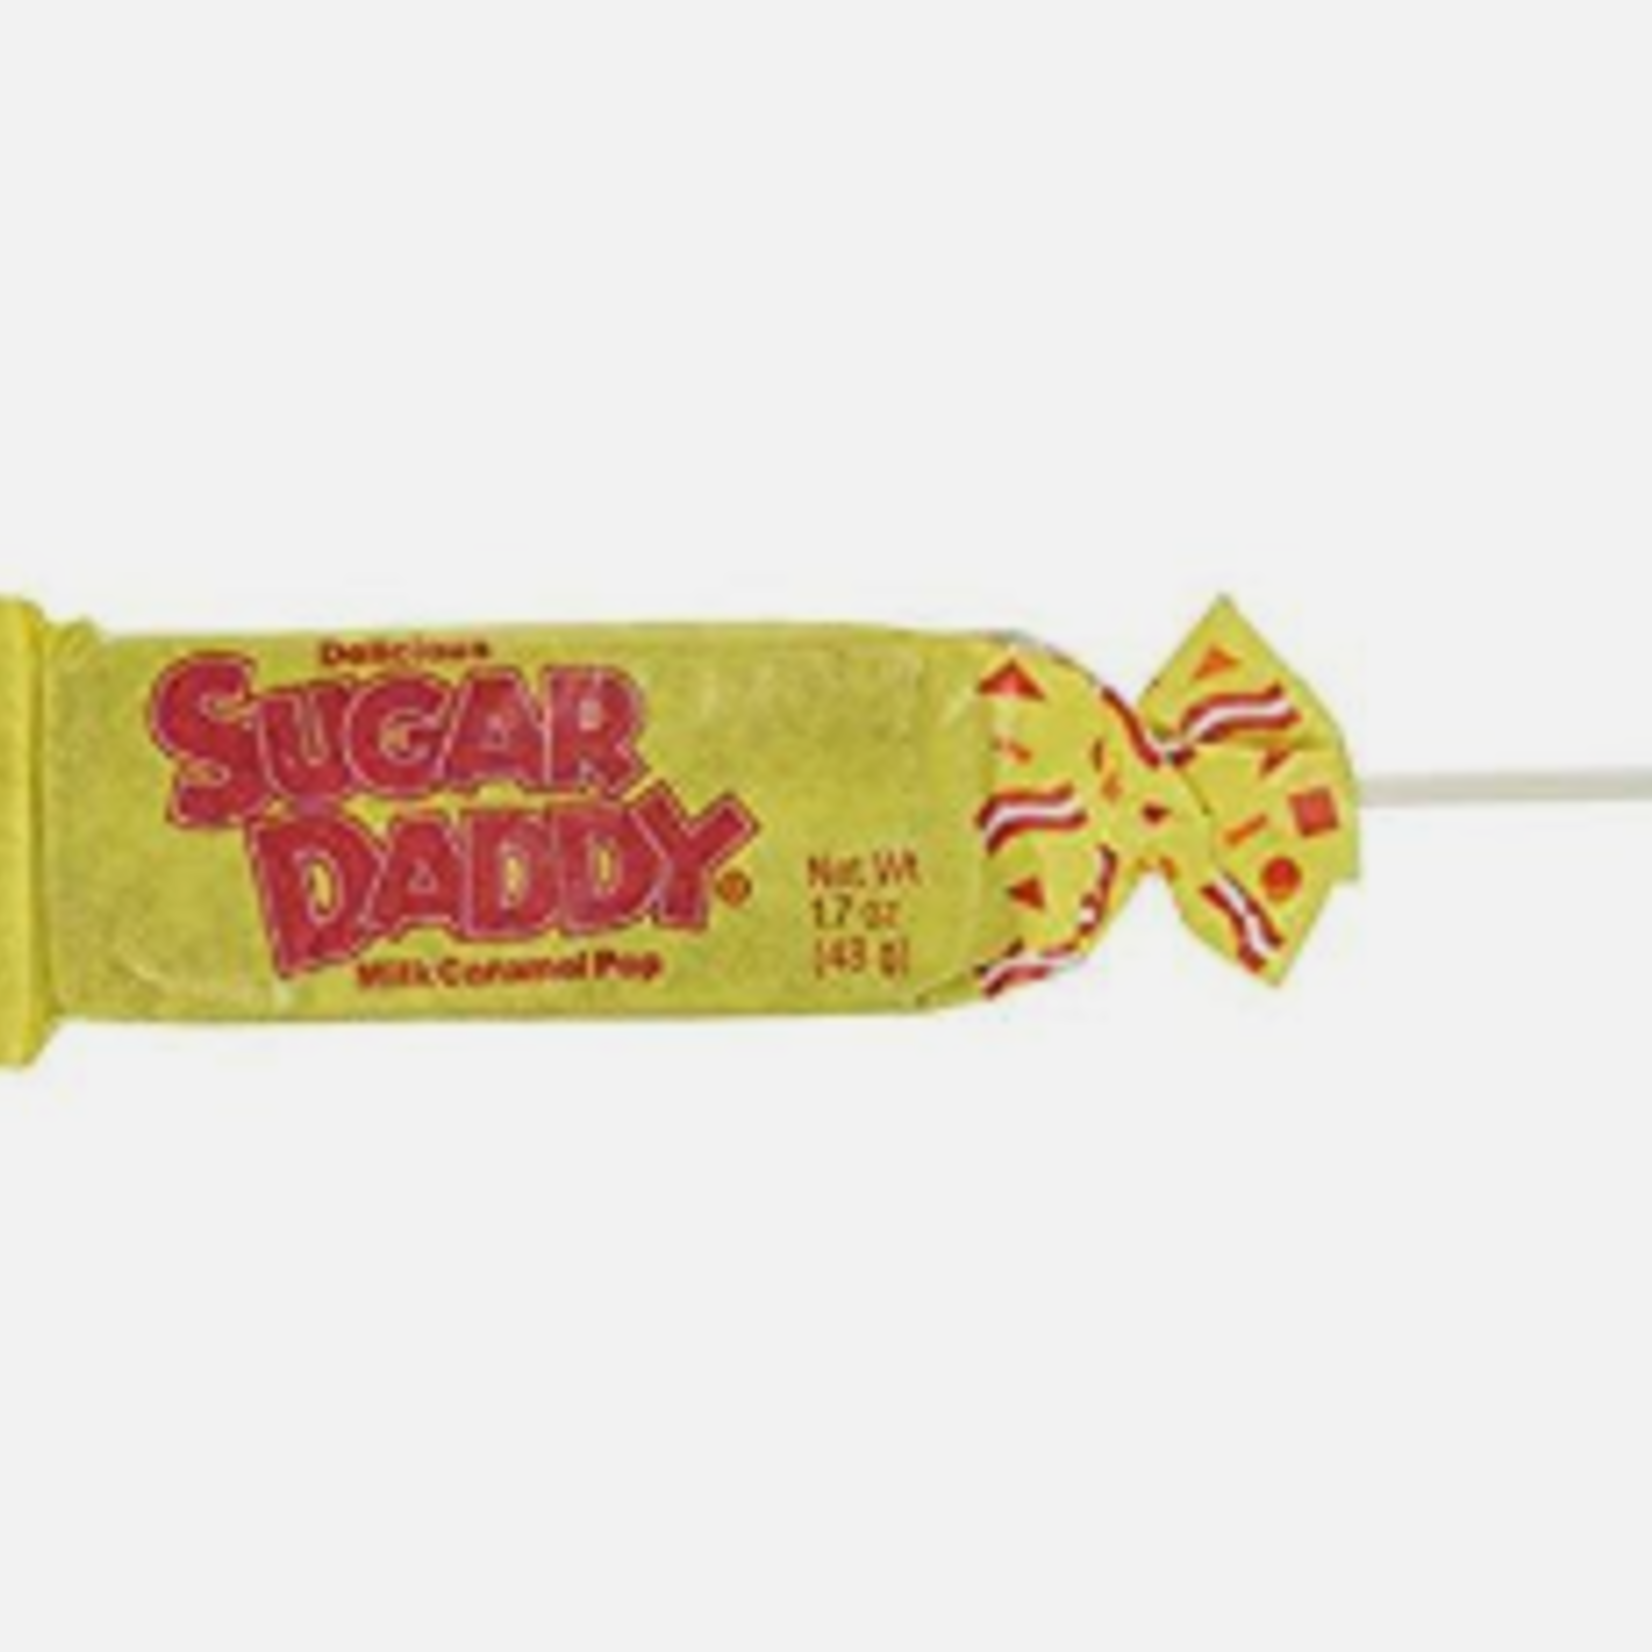 Nassau Candy Sugar Daddies, single